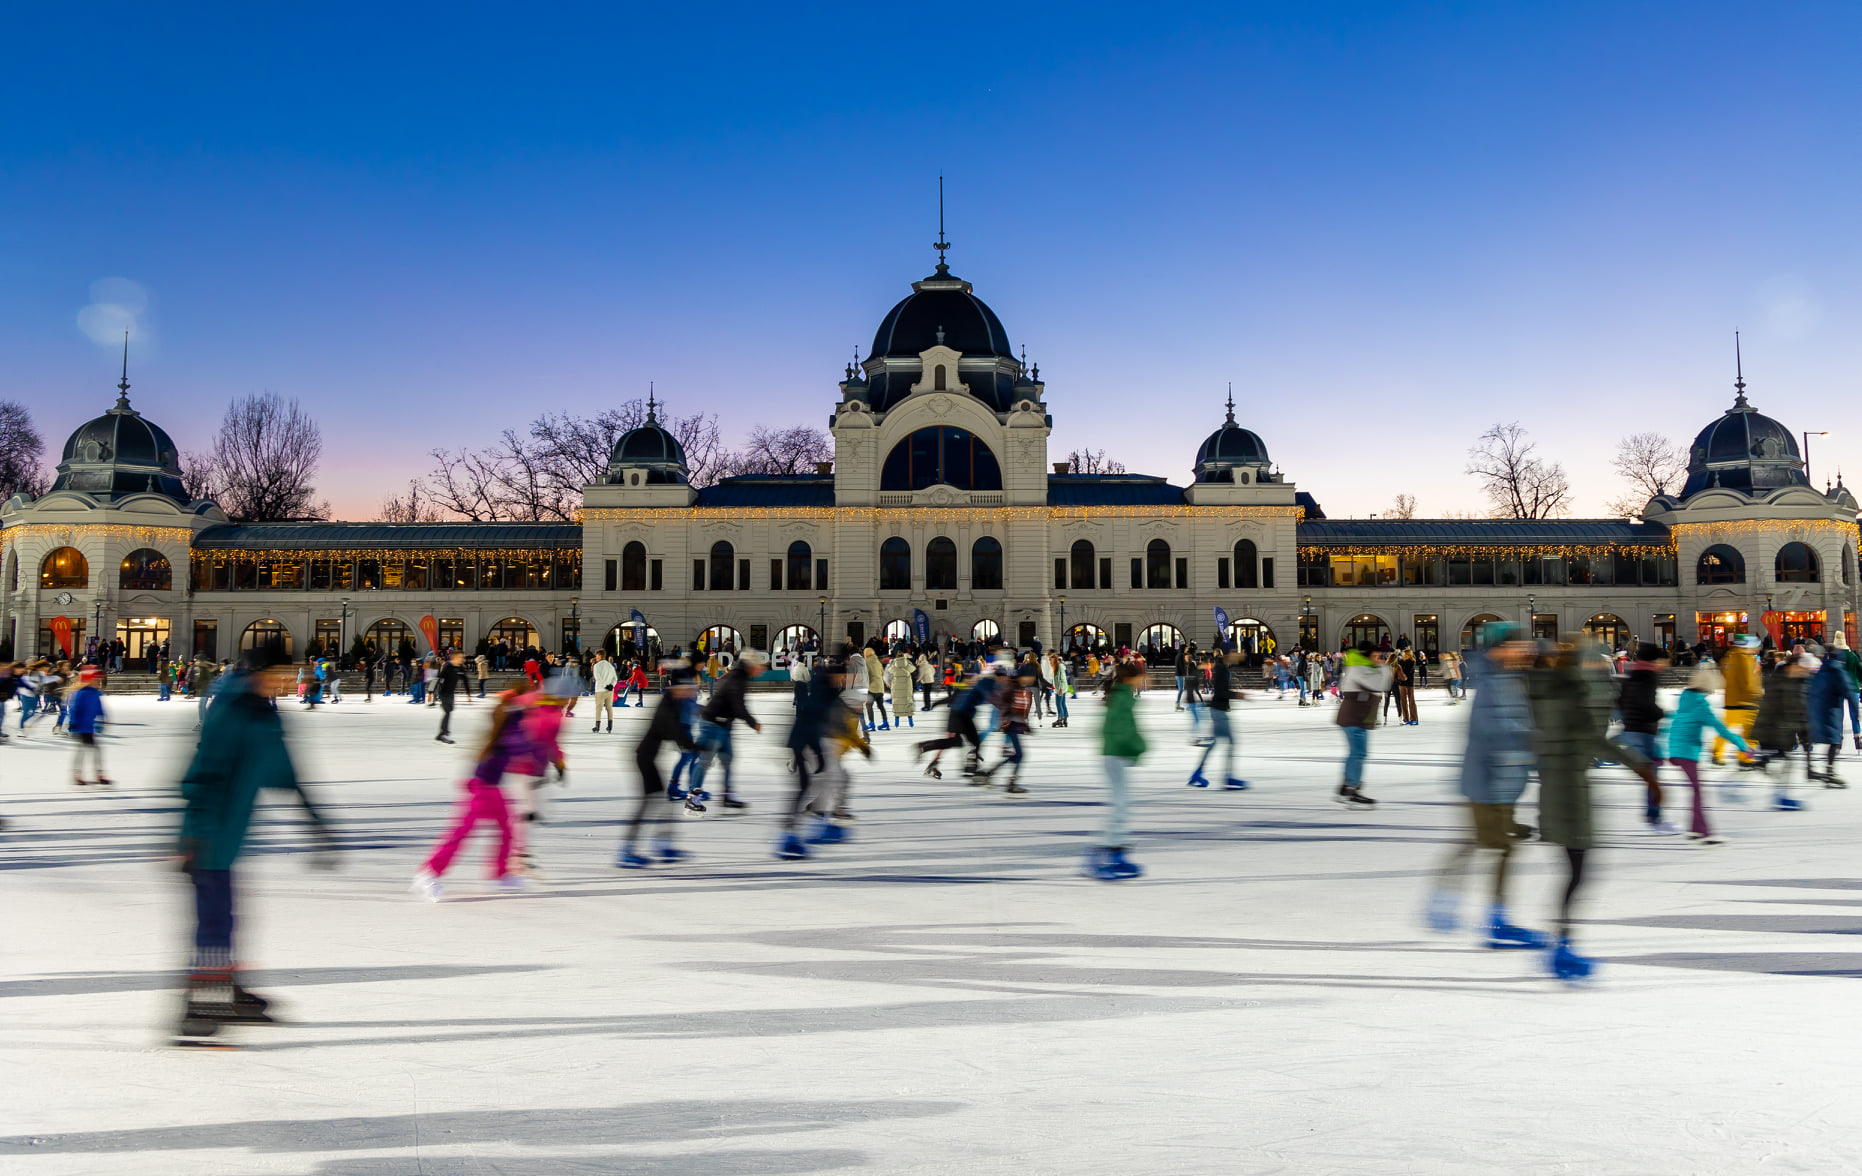 Die Eislaufsaison startet auf der Eislaufbahn im Stadtwäldchen